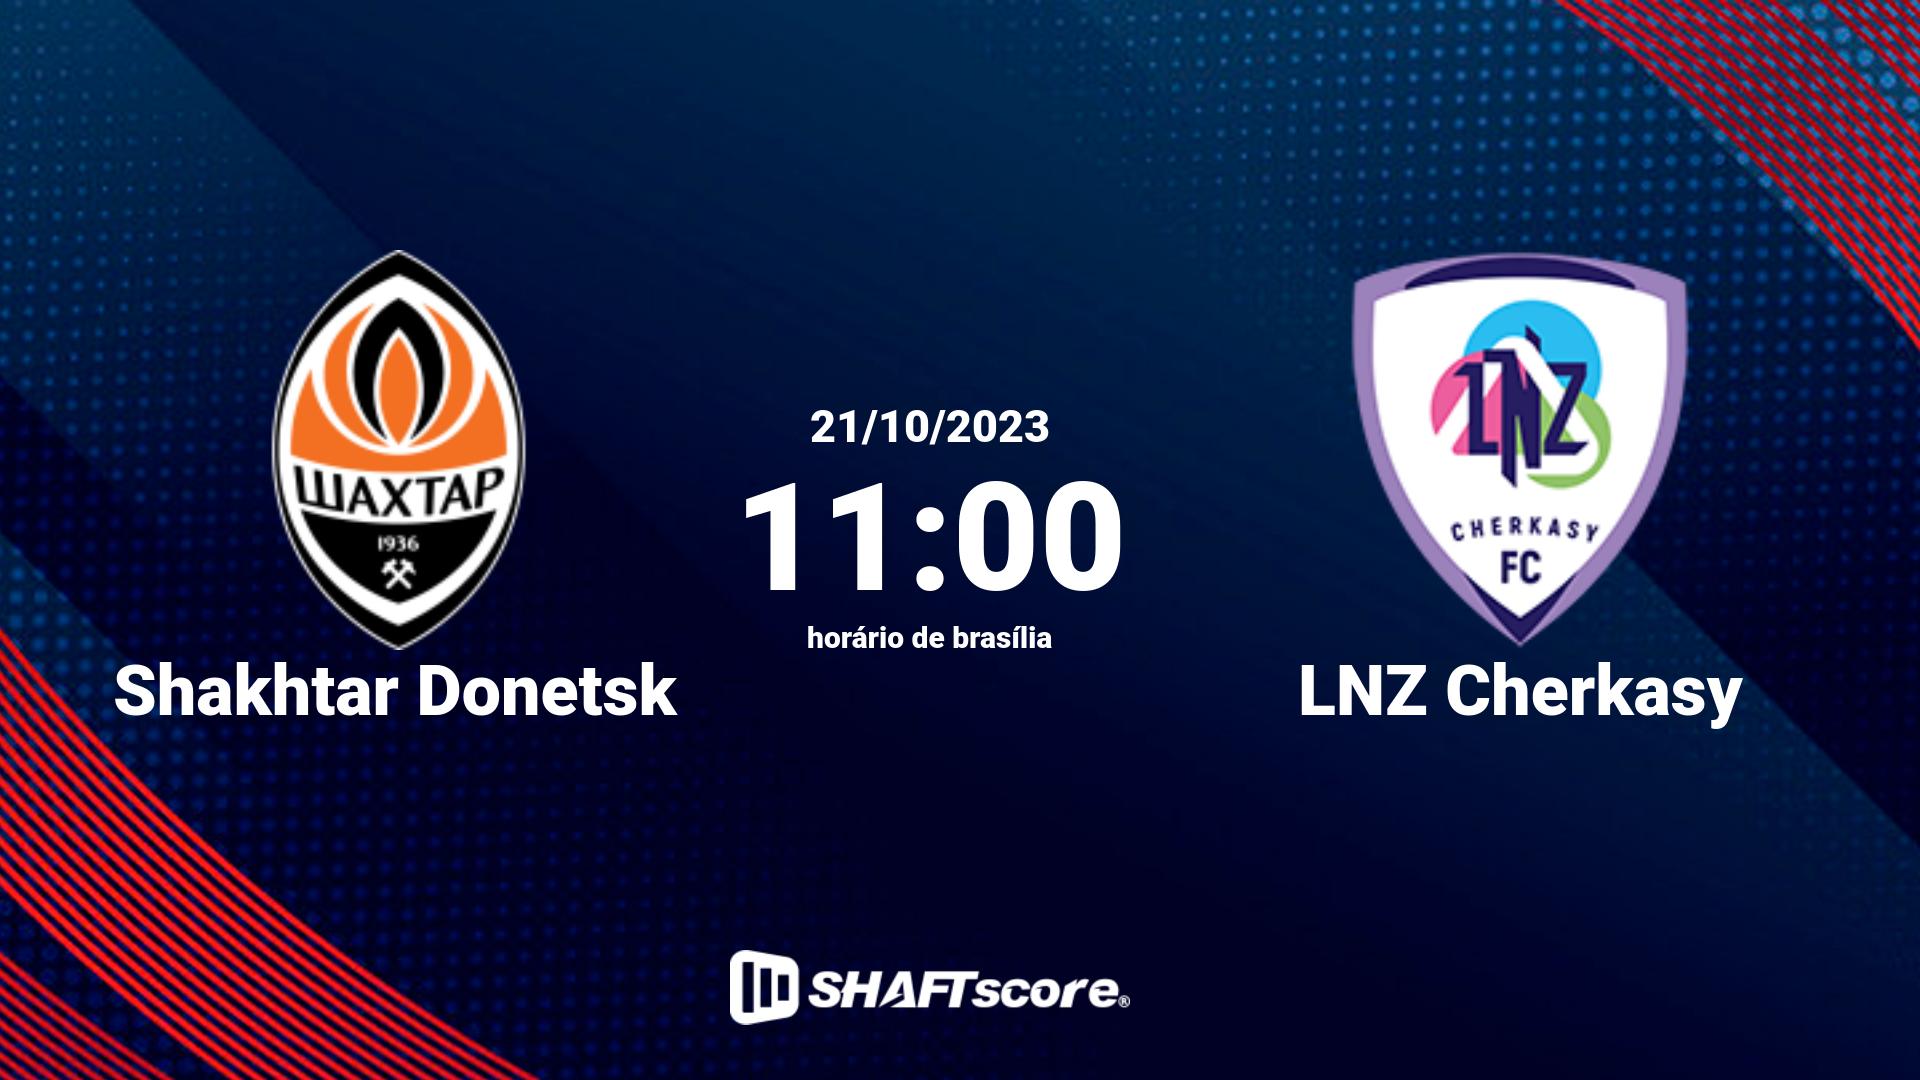 Estatísticas do jogo Shakhtar Donetsk vs LNZ Cherkasy 21.10 11:00